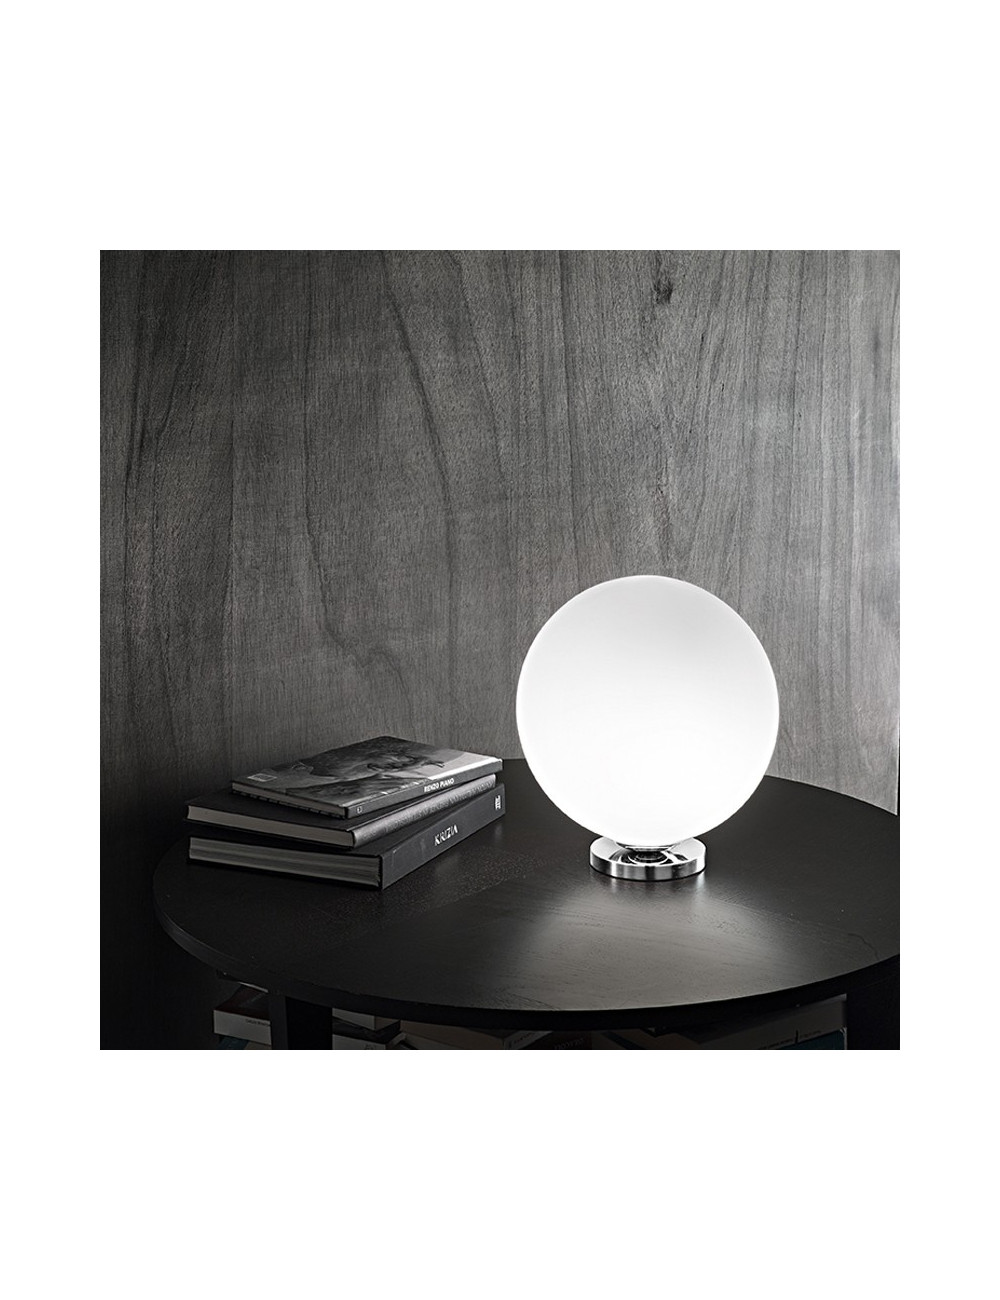 6350 Perenz Lighting | SPHERA table Lamp Modern Glass Ball White D. 30